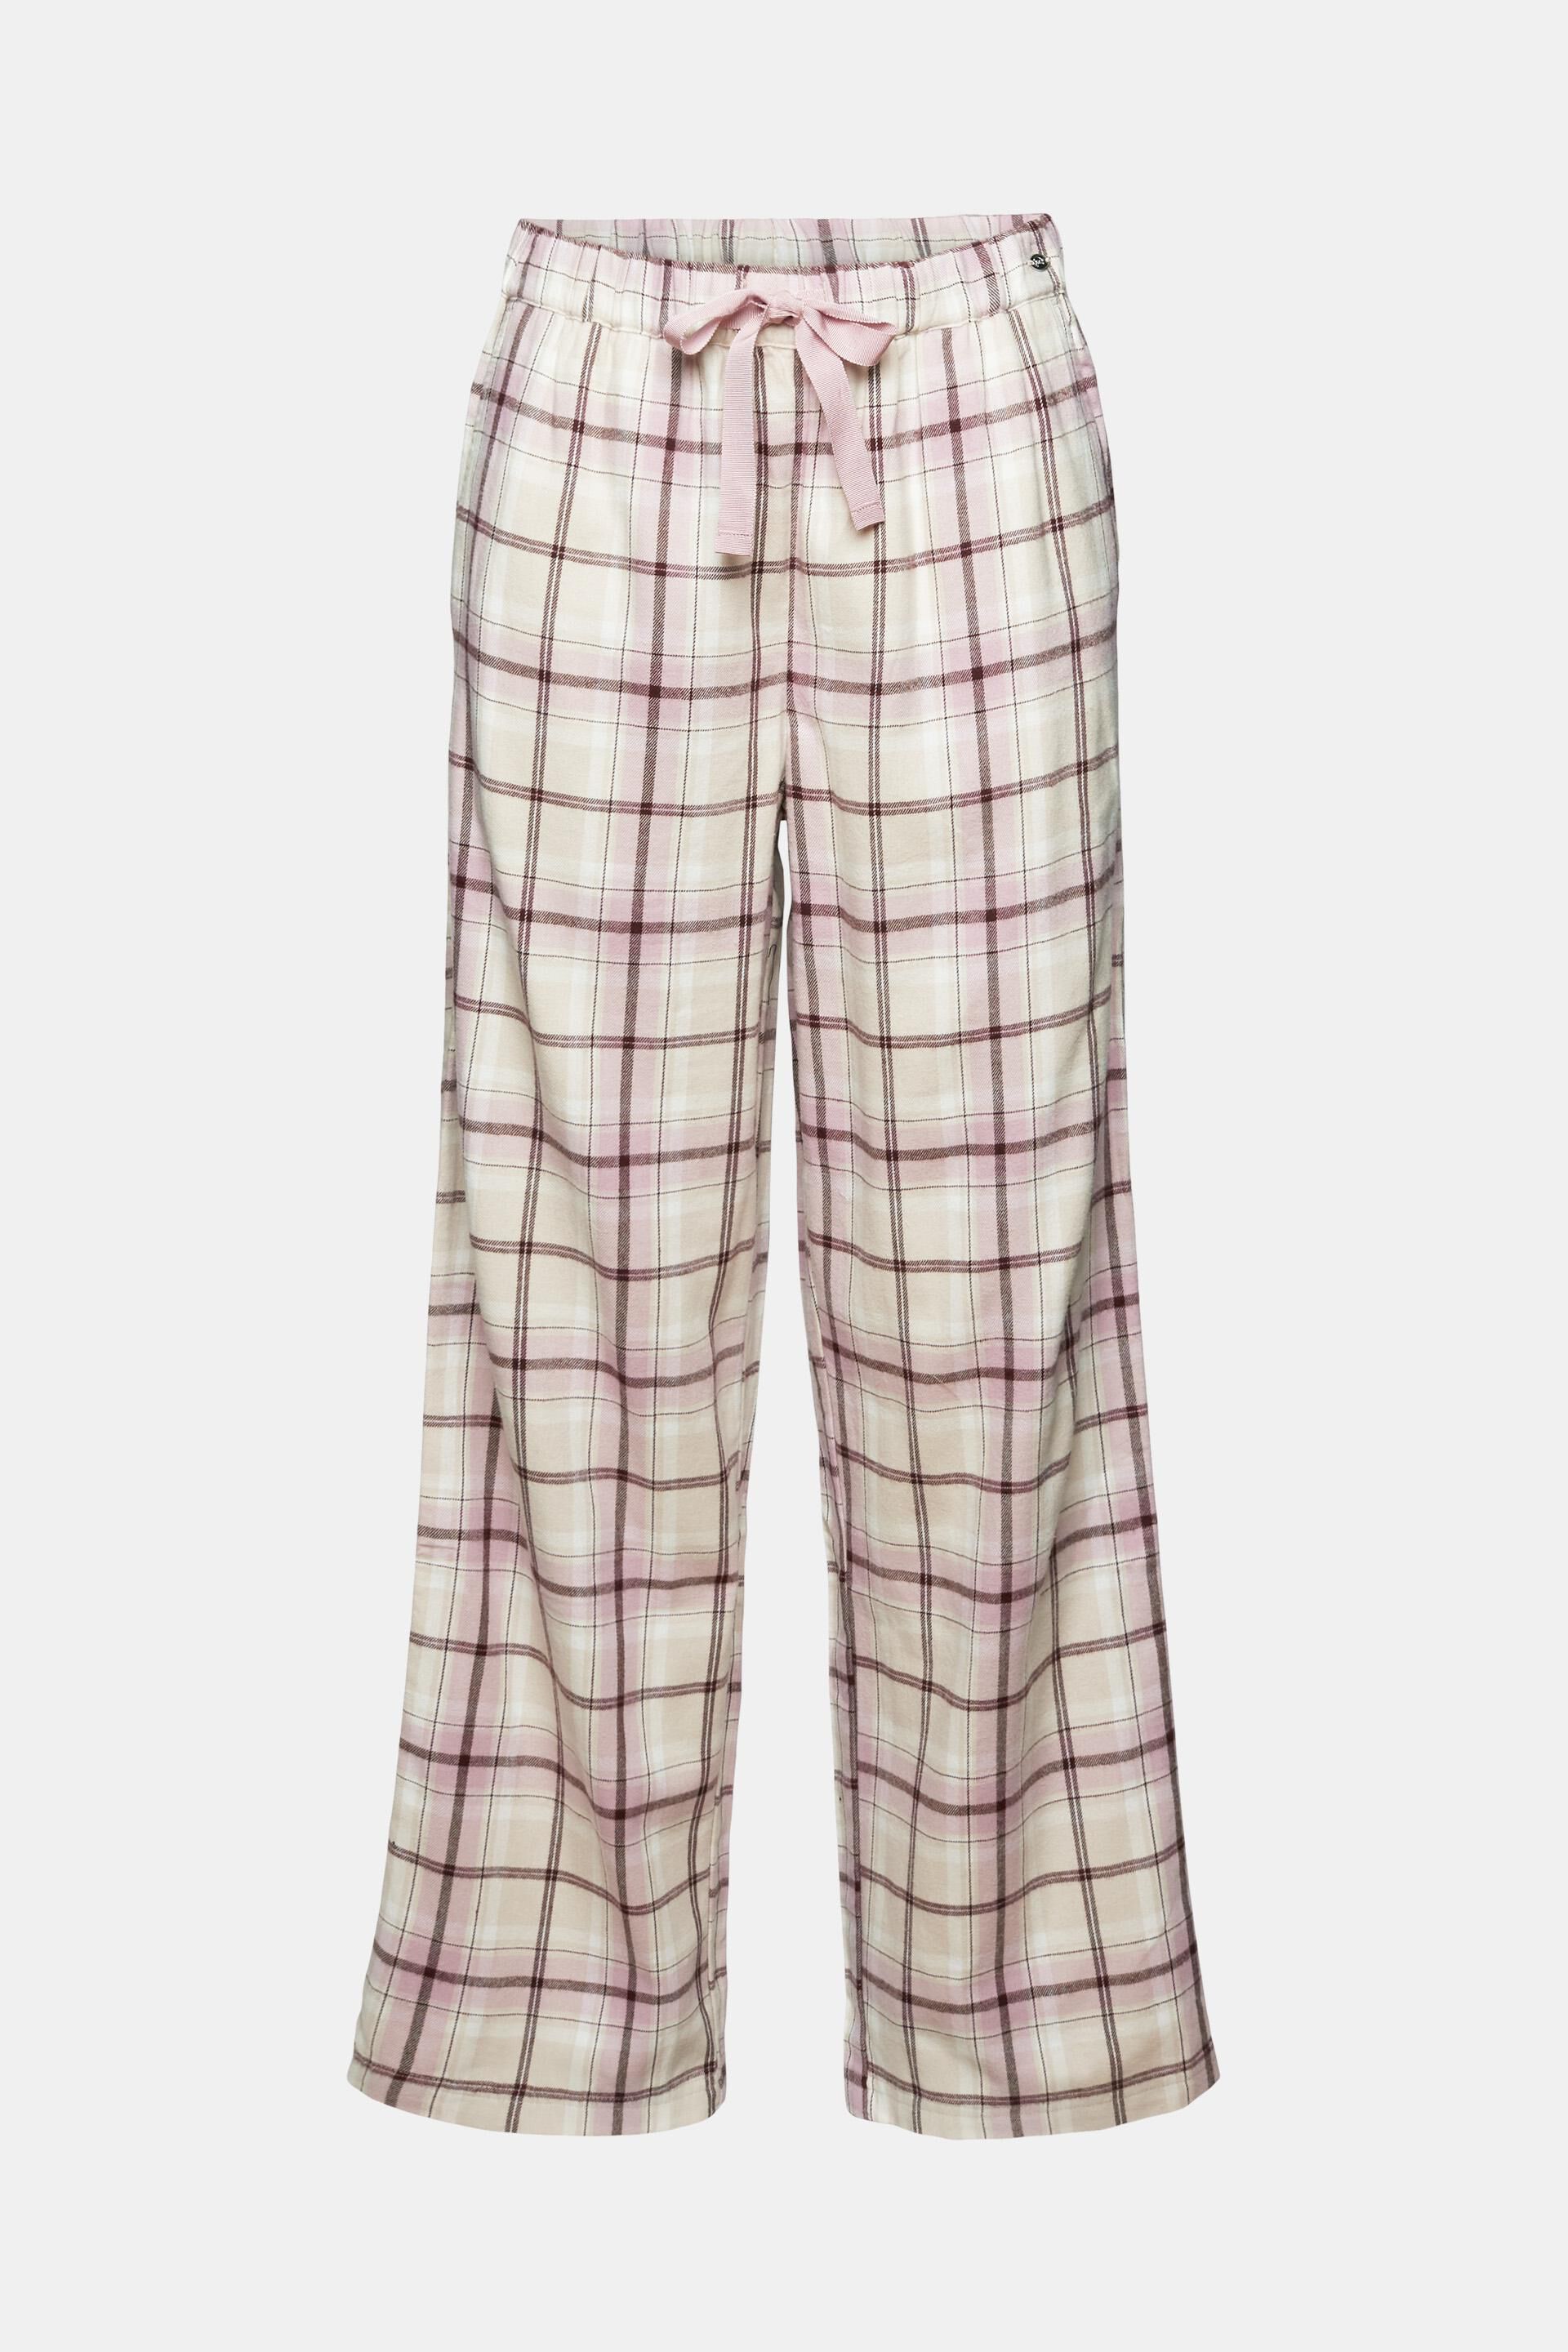 ASY 2 WEAR ® Men Soft Cotton CHECKS Pyjama Pants S -4xl Lounge Pants